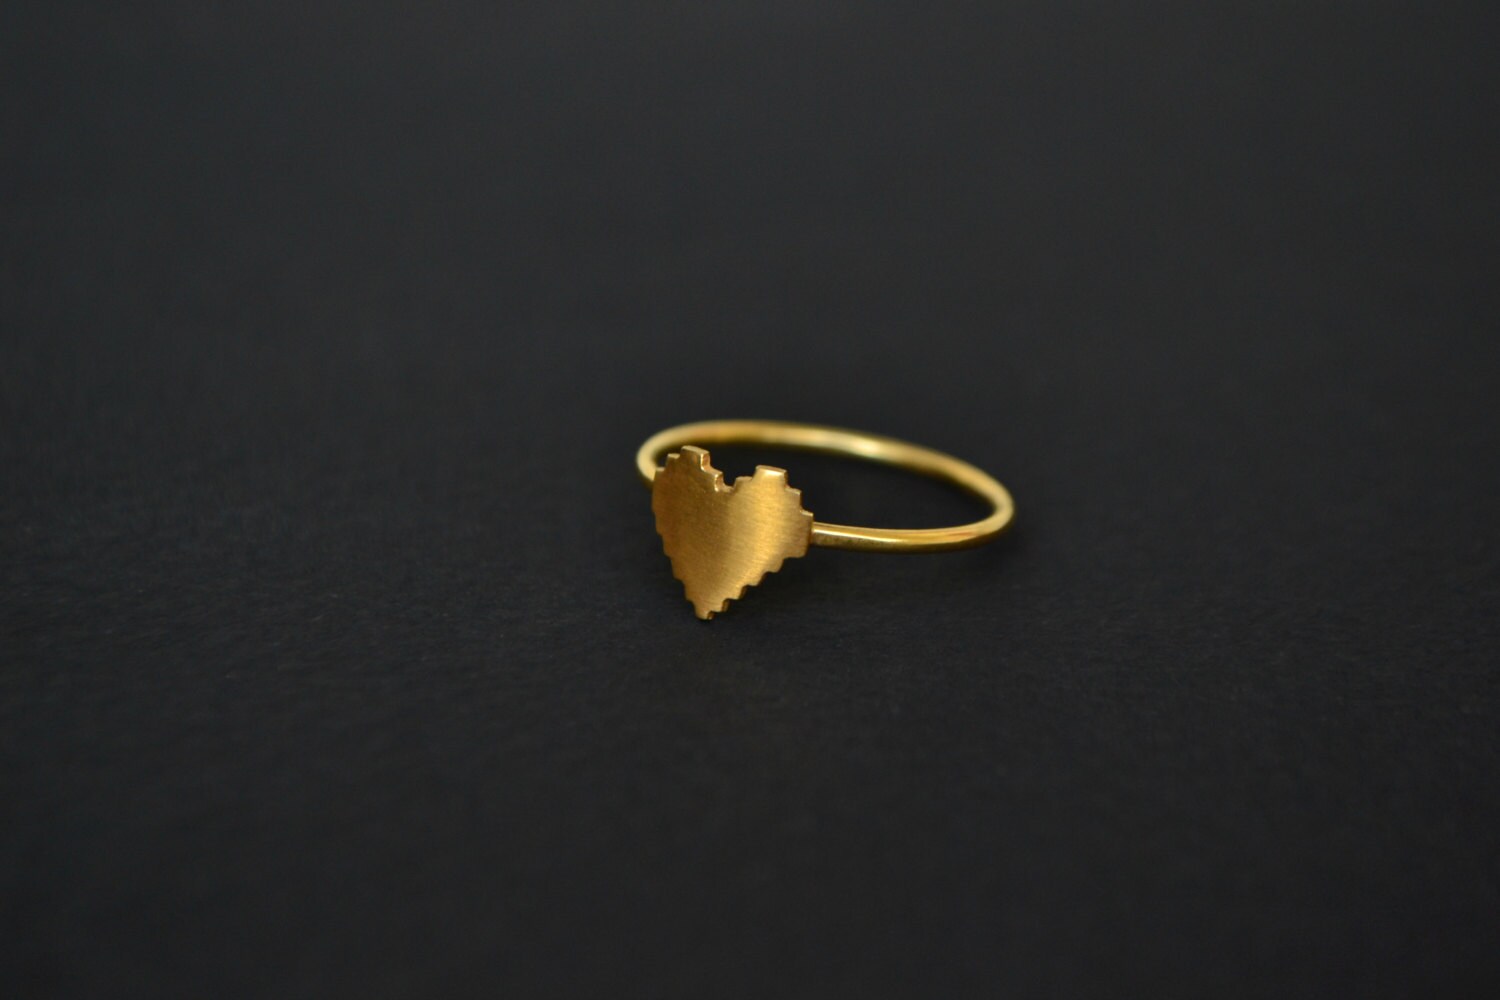 Apollo Men's 24K Yellow Gold Ring